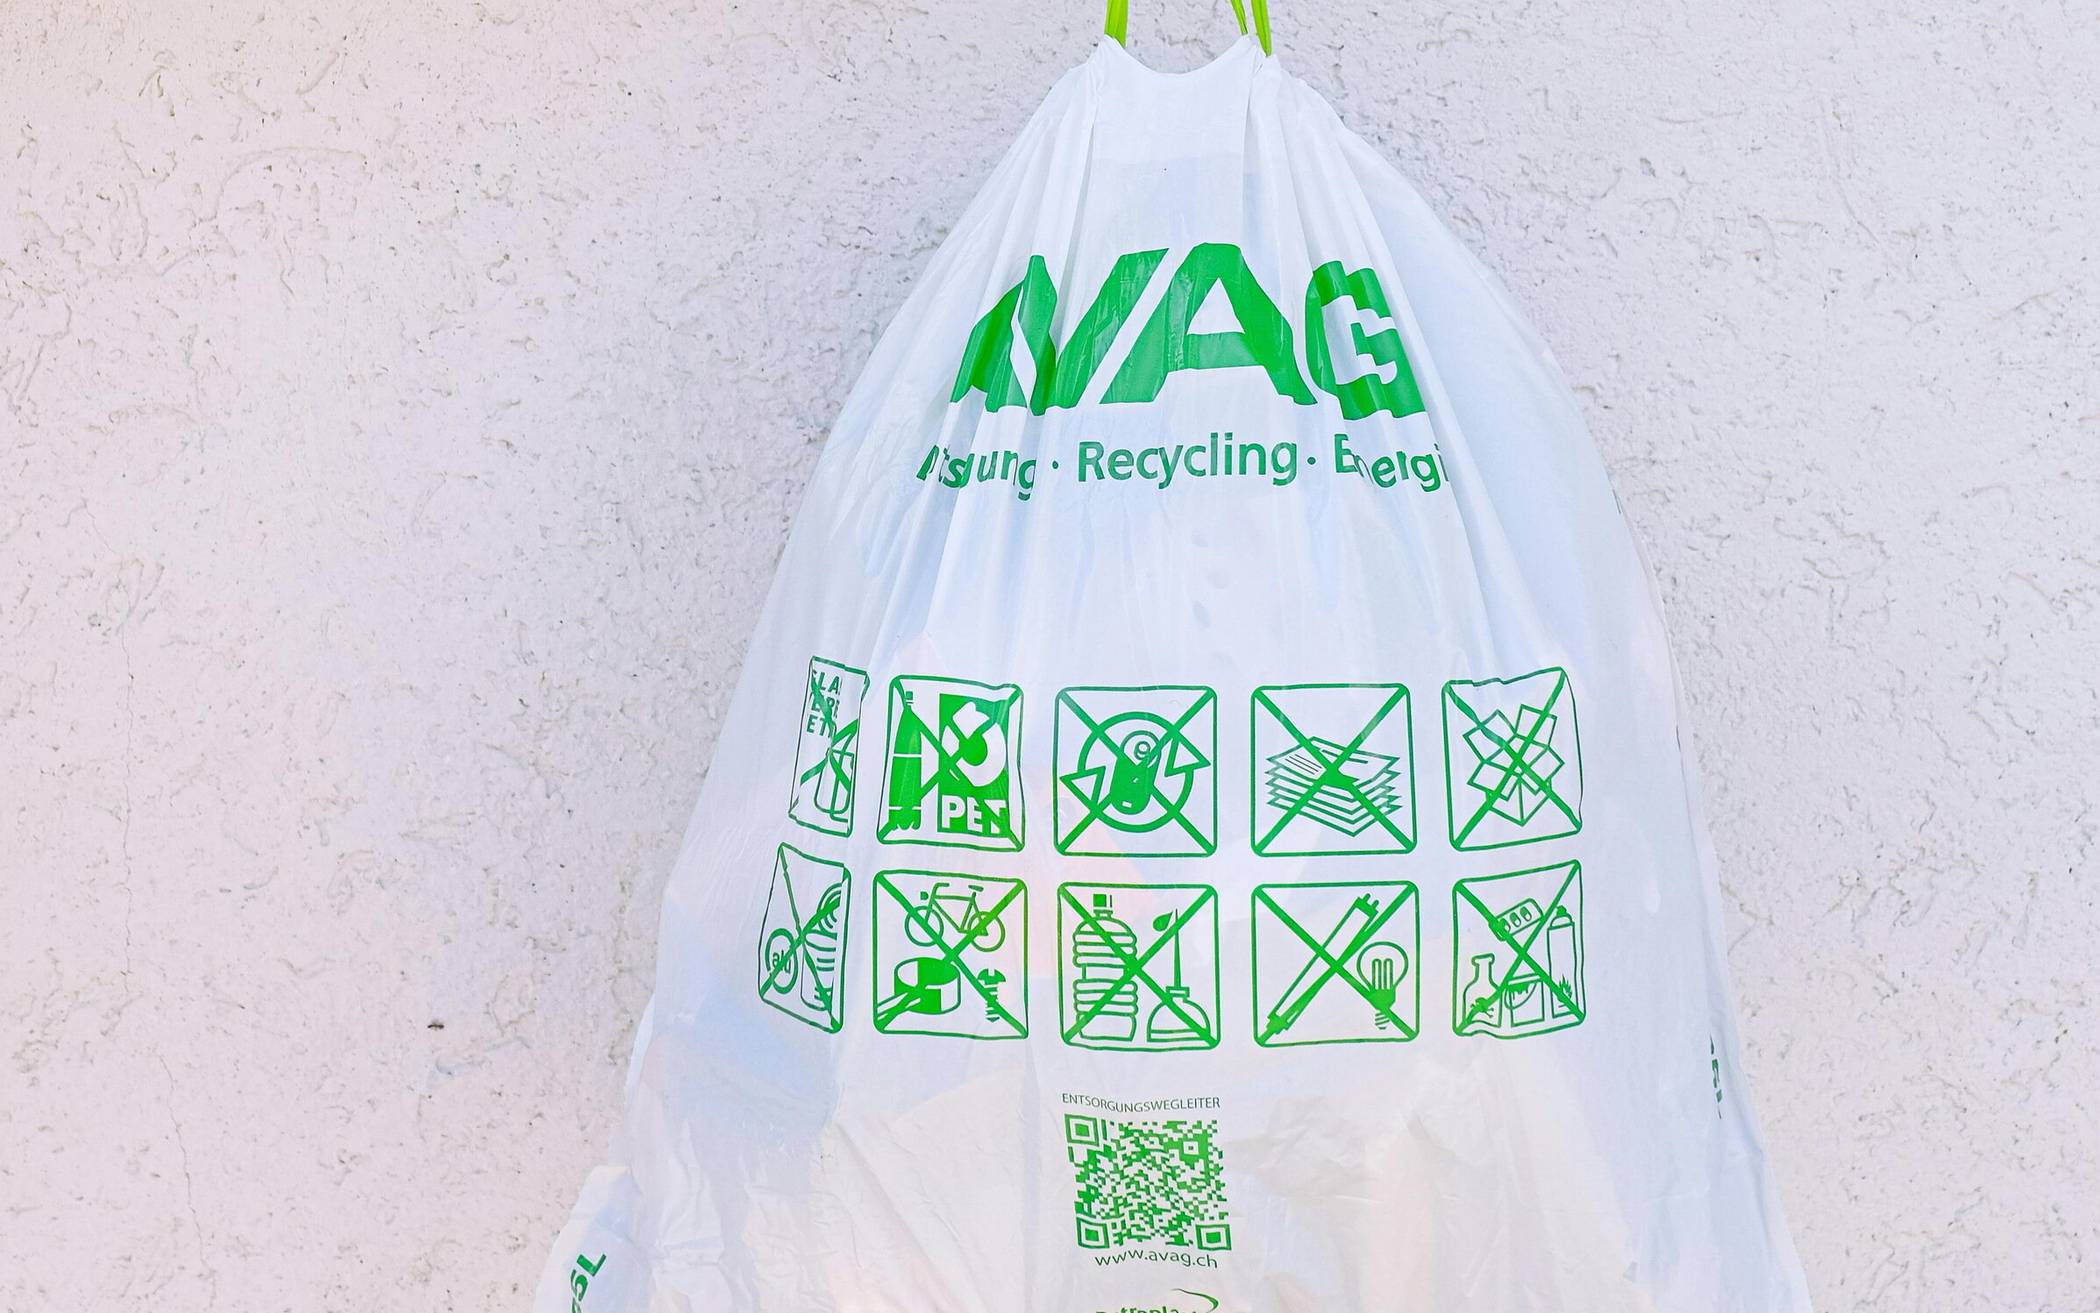 Nachhaltiger leben durch Recycling und Entrümpelung